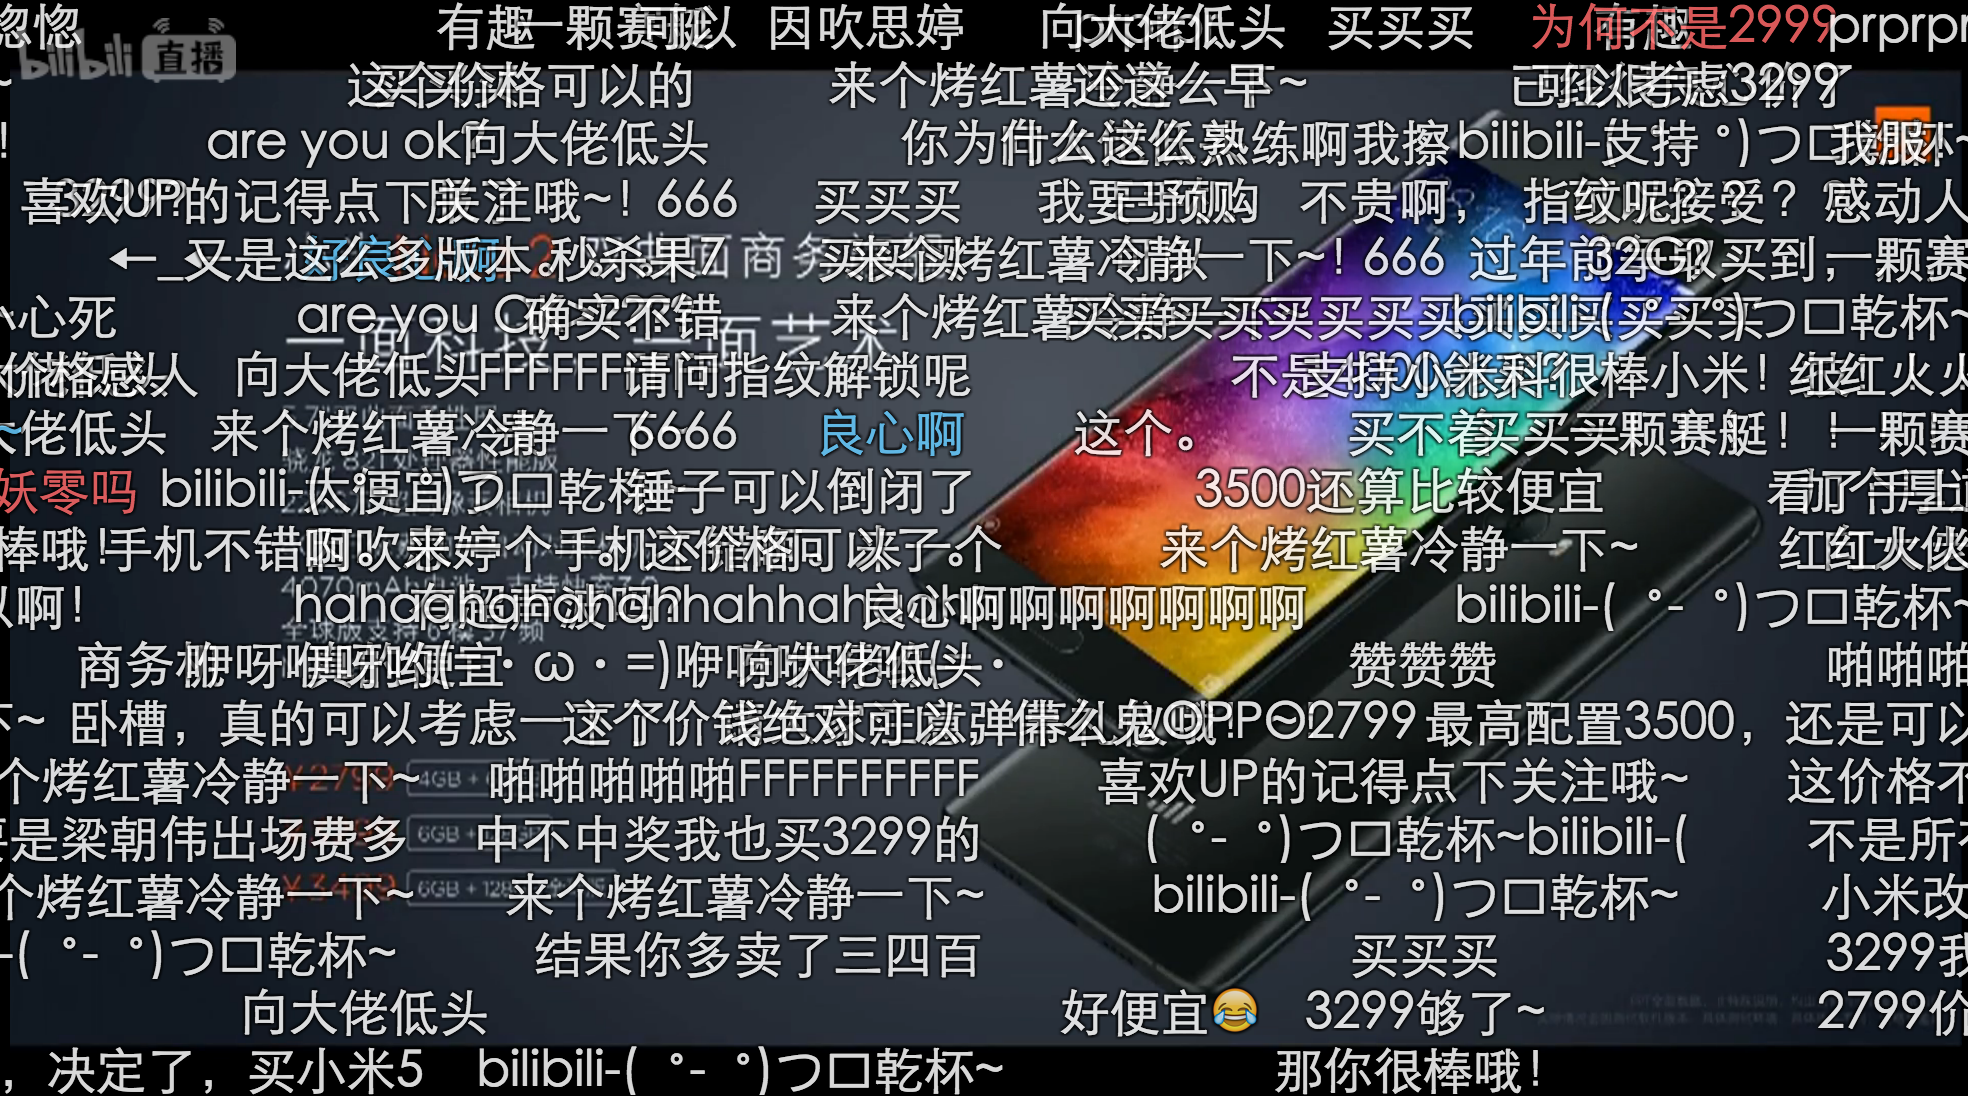 小米手机 Note 2 宣布公布，一大股票波段子也日夜兼程的来啦